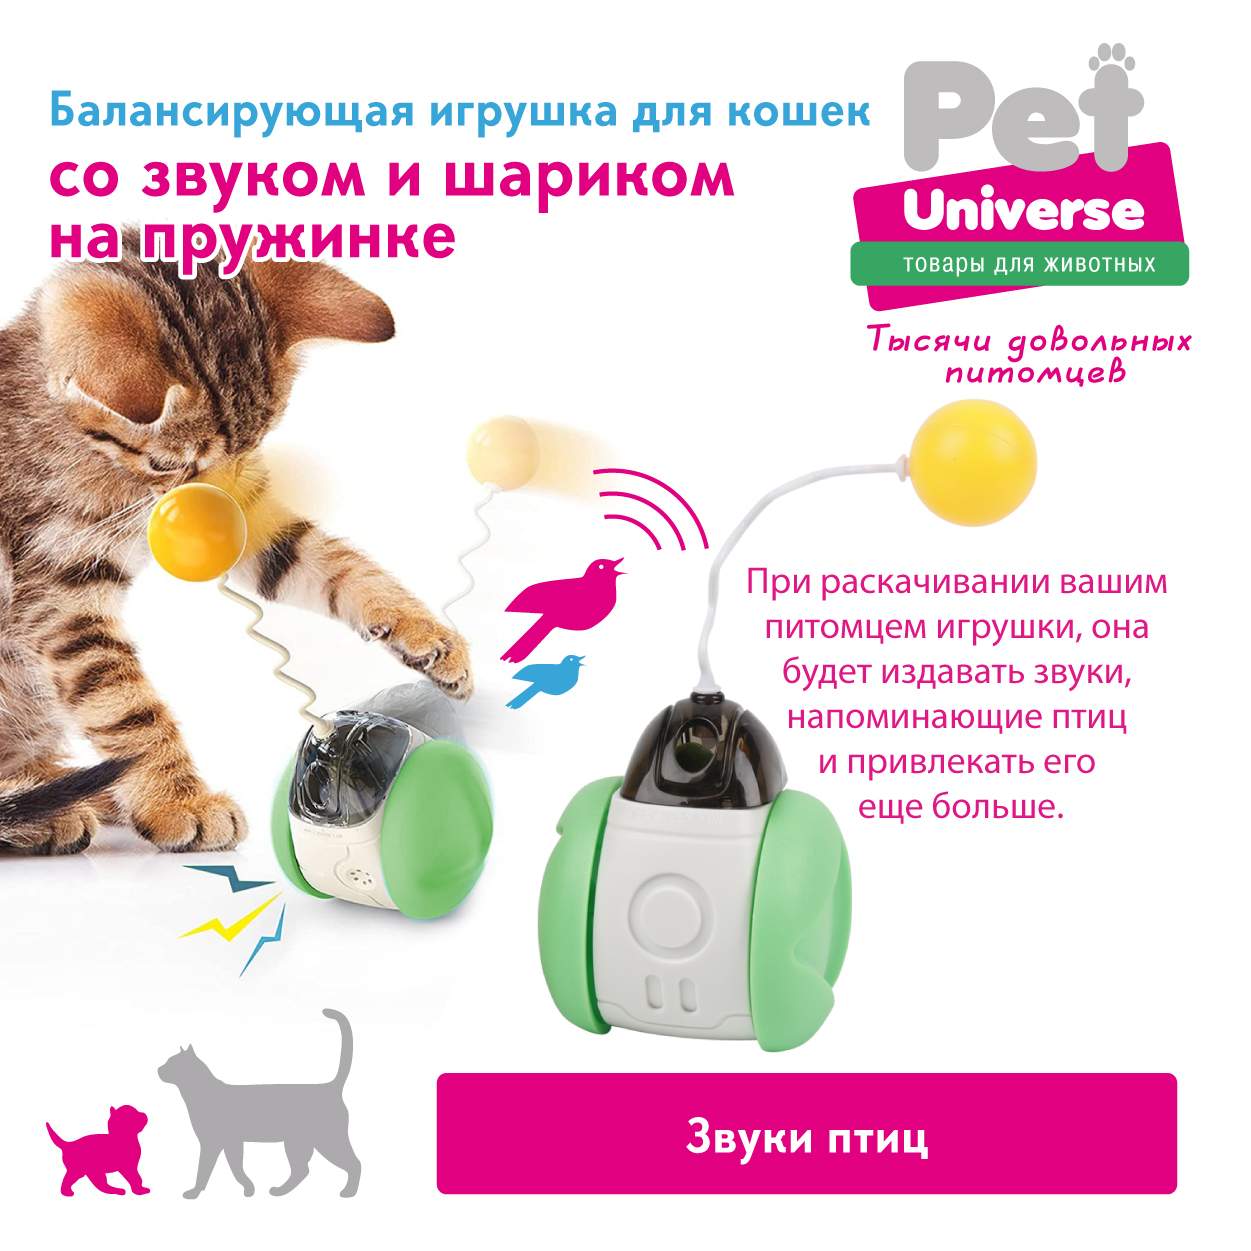 Игрушка неваляшка для кошек Pet Universe интерактивная, имитатор пения птиц  - отзывы покупателей на маркетплейсе Мегамаркет | Артикул  товара:600010704265